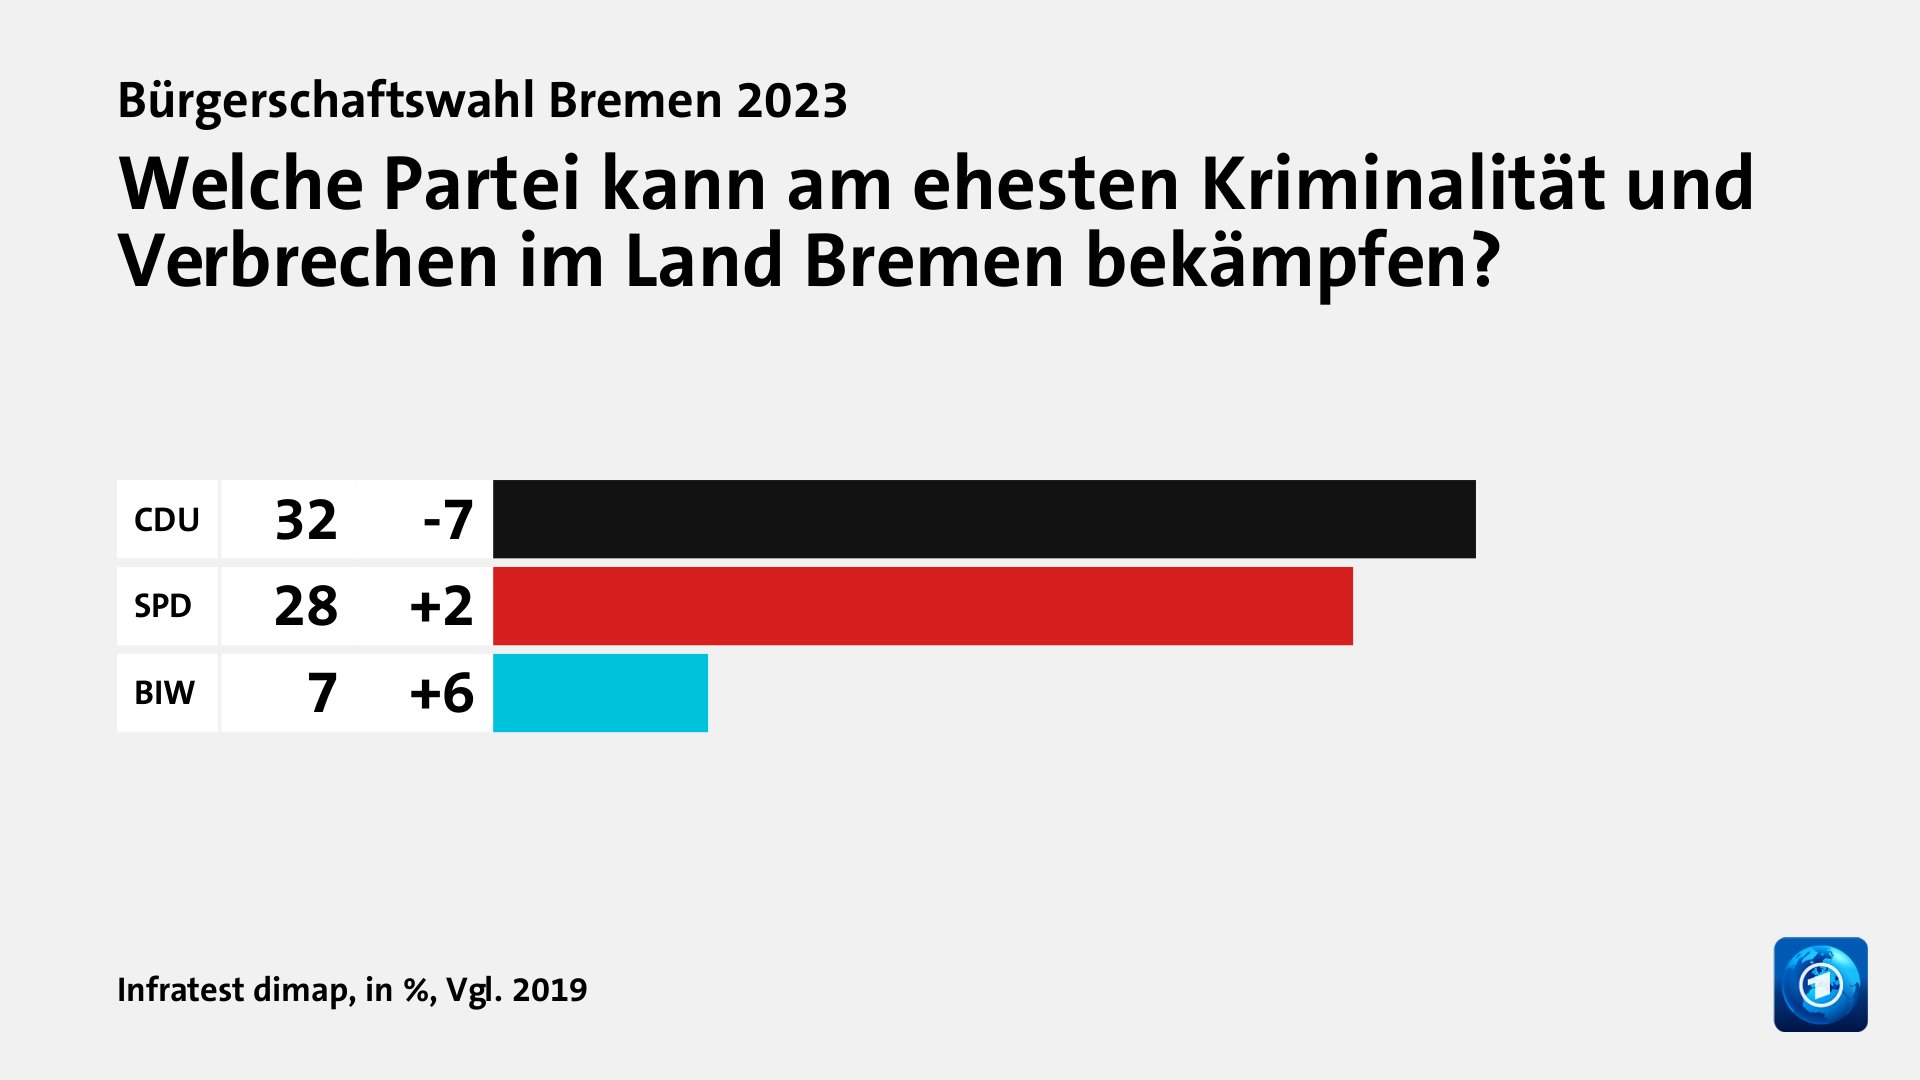 Welche Partei kann am ehesten Kriminalität und Verbrechen im Land Bremen bekämpfen?, in %, Vgl. 2019: CDU 32, SPD 28, BIW 7, Quelle: Infratest dimap